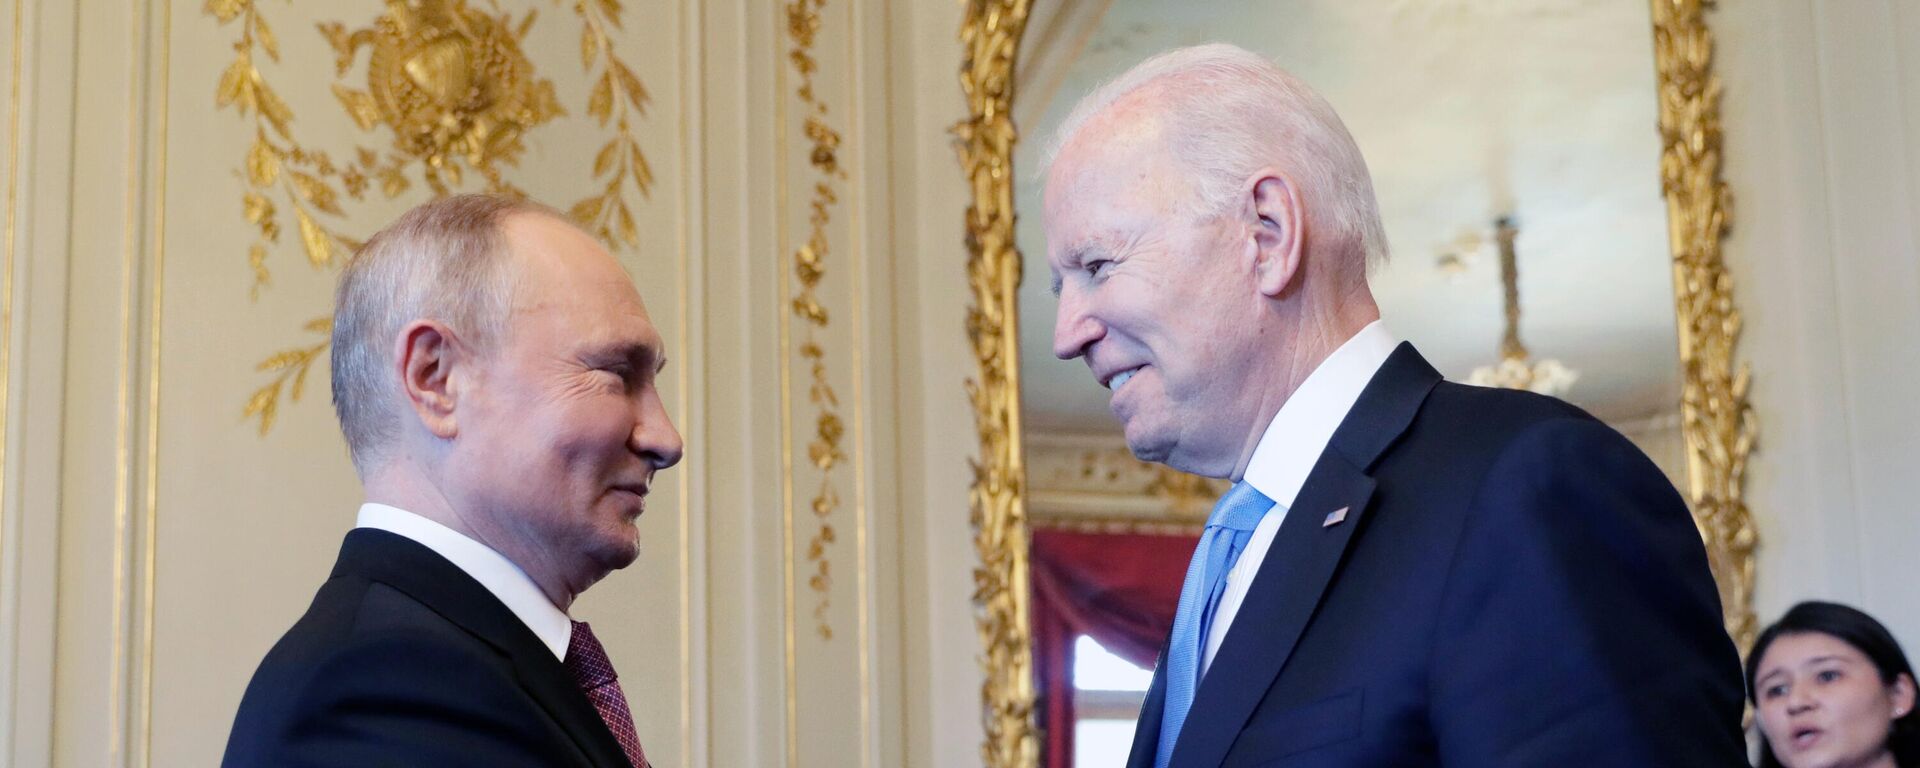 Vladímir Putin, presidente de Rusia, y Joe Biden, presidente de EEUU - Sputnik Mundo, 1920, 07.12.2021